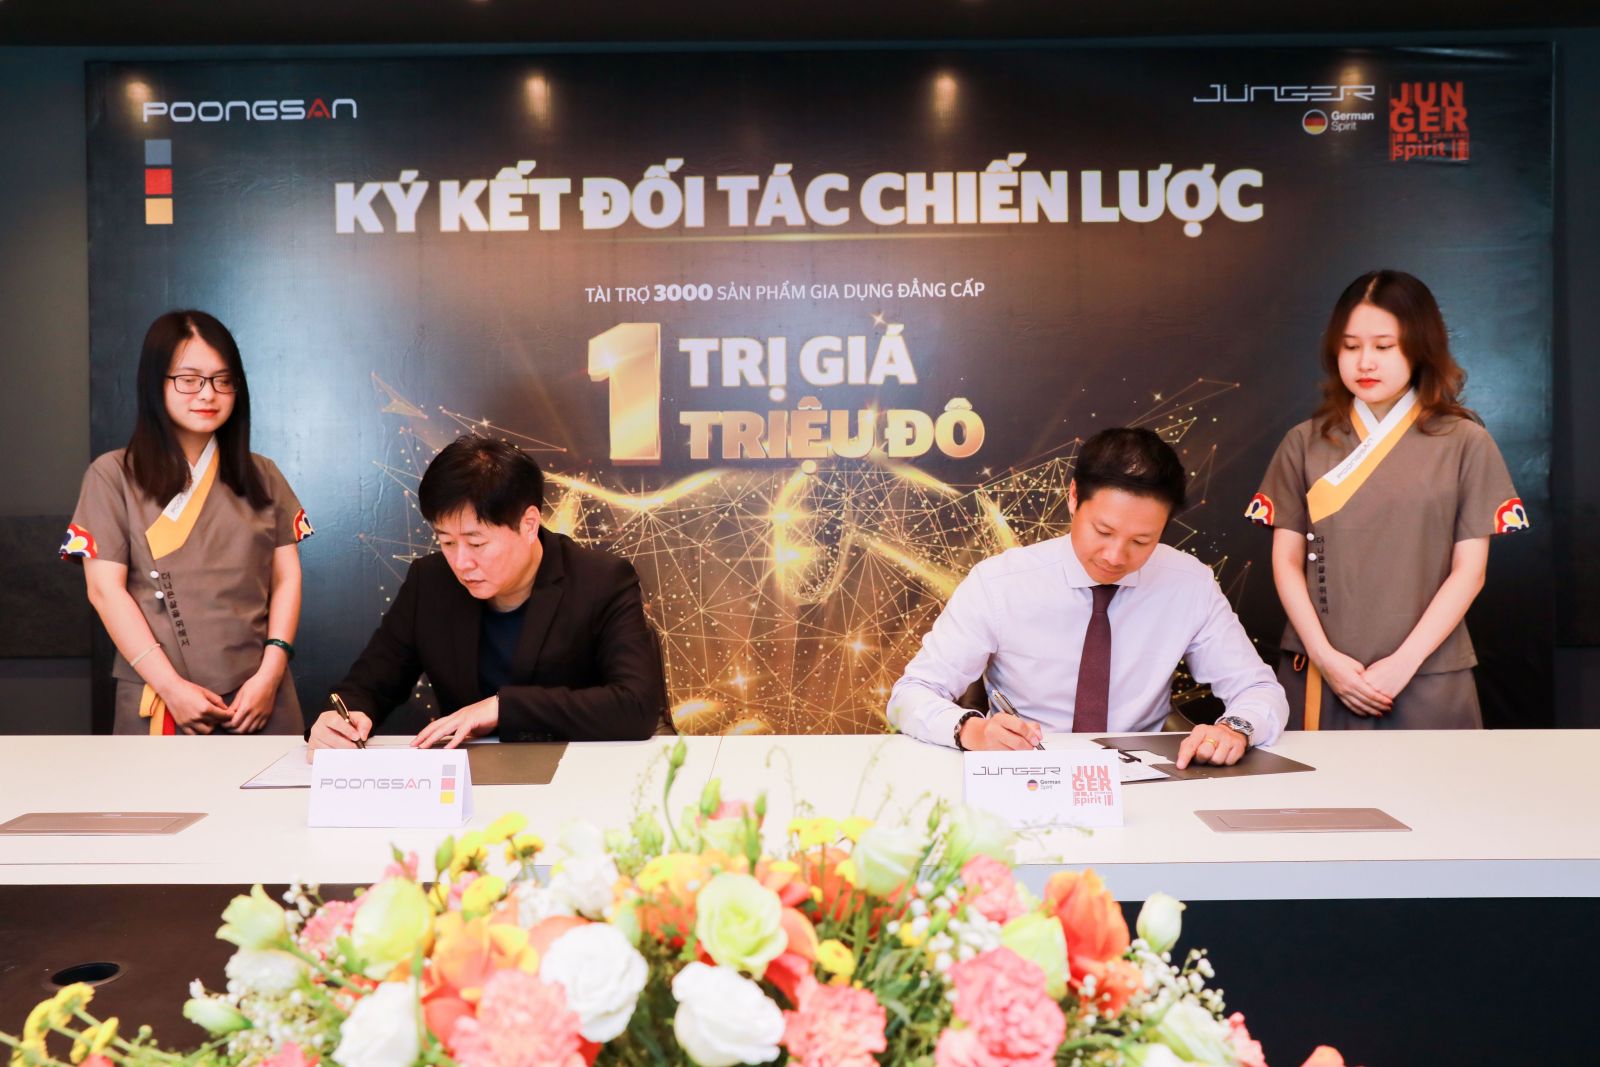 Poongsan và Junger chính thức ký kết đối tác chiến lược